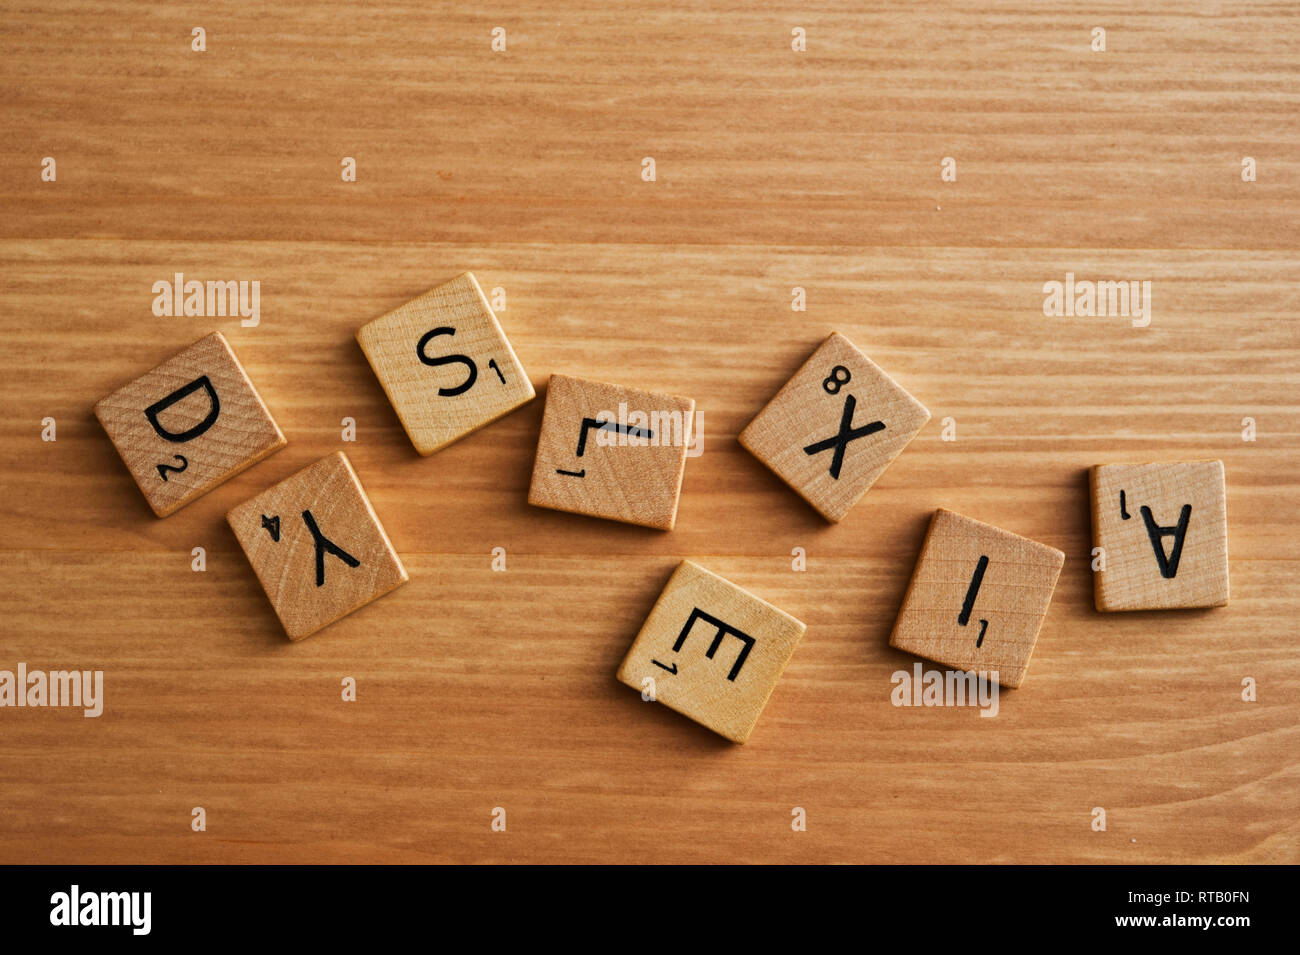 Wort Legasthenie mit Scrabble Fliesen geschrieben Stockfoto